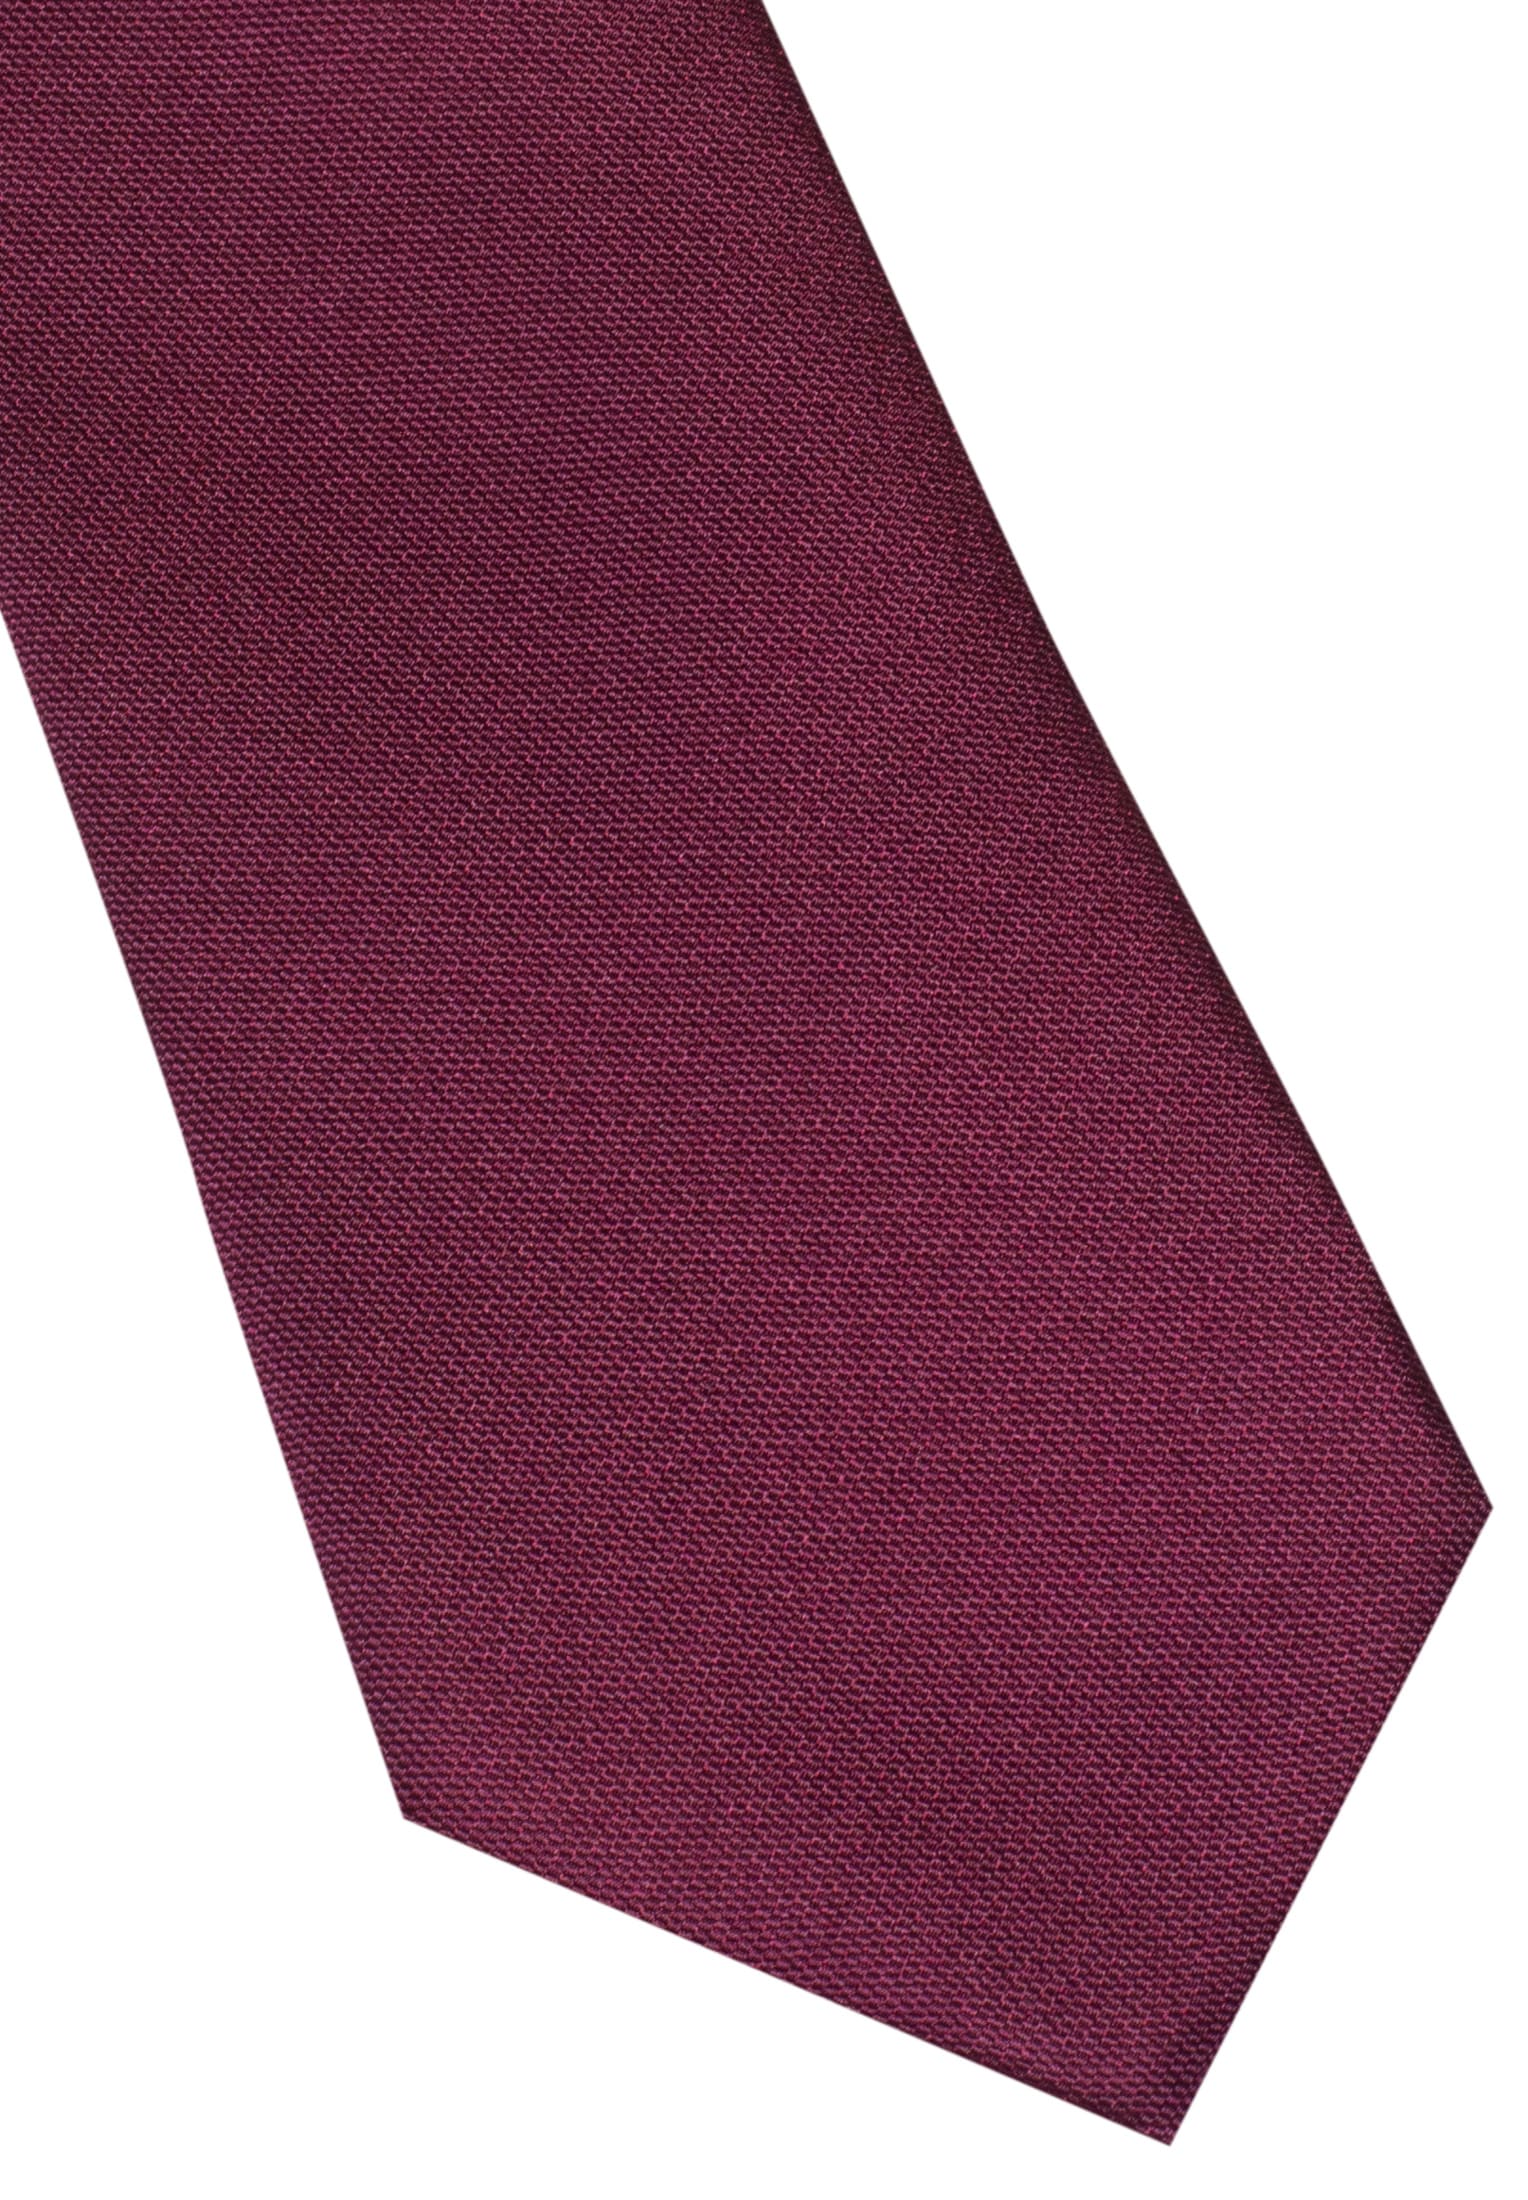 Krawatte in navy unifarben | navy | 142 | 1AC00020-01-91-142